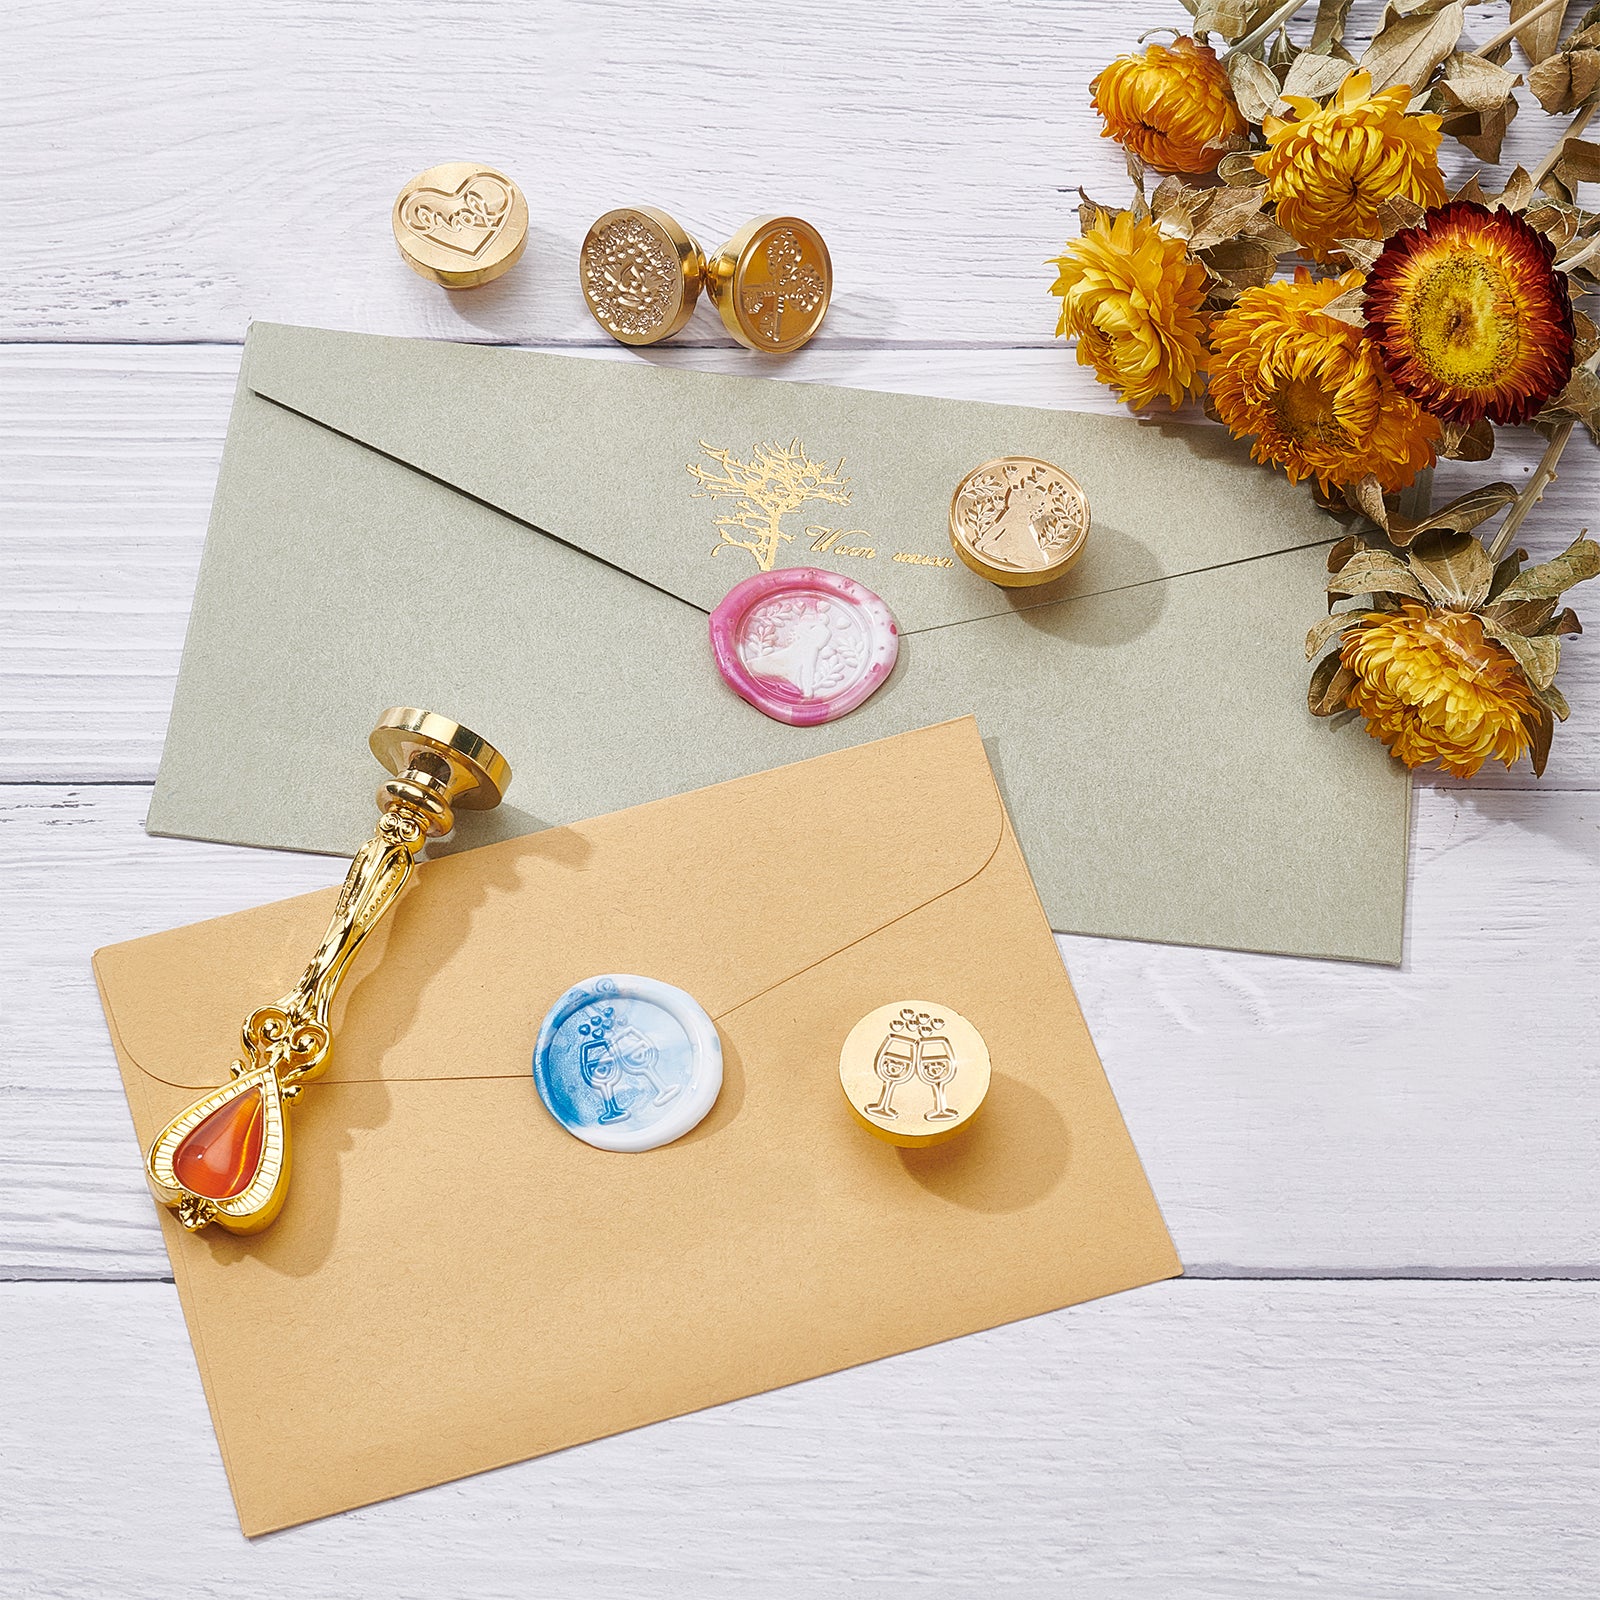 7pcs Flower & Snowflake Design Stamp, Multi-purpose Wax Seal Set For DIY  Craft